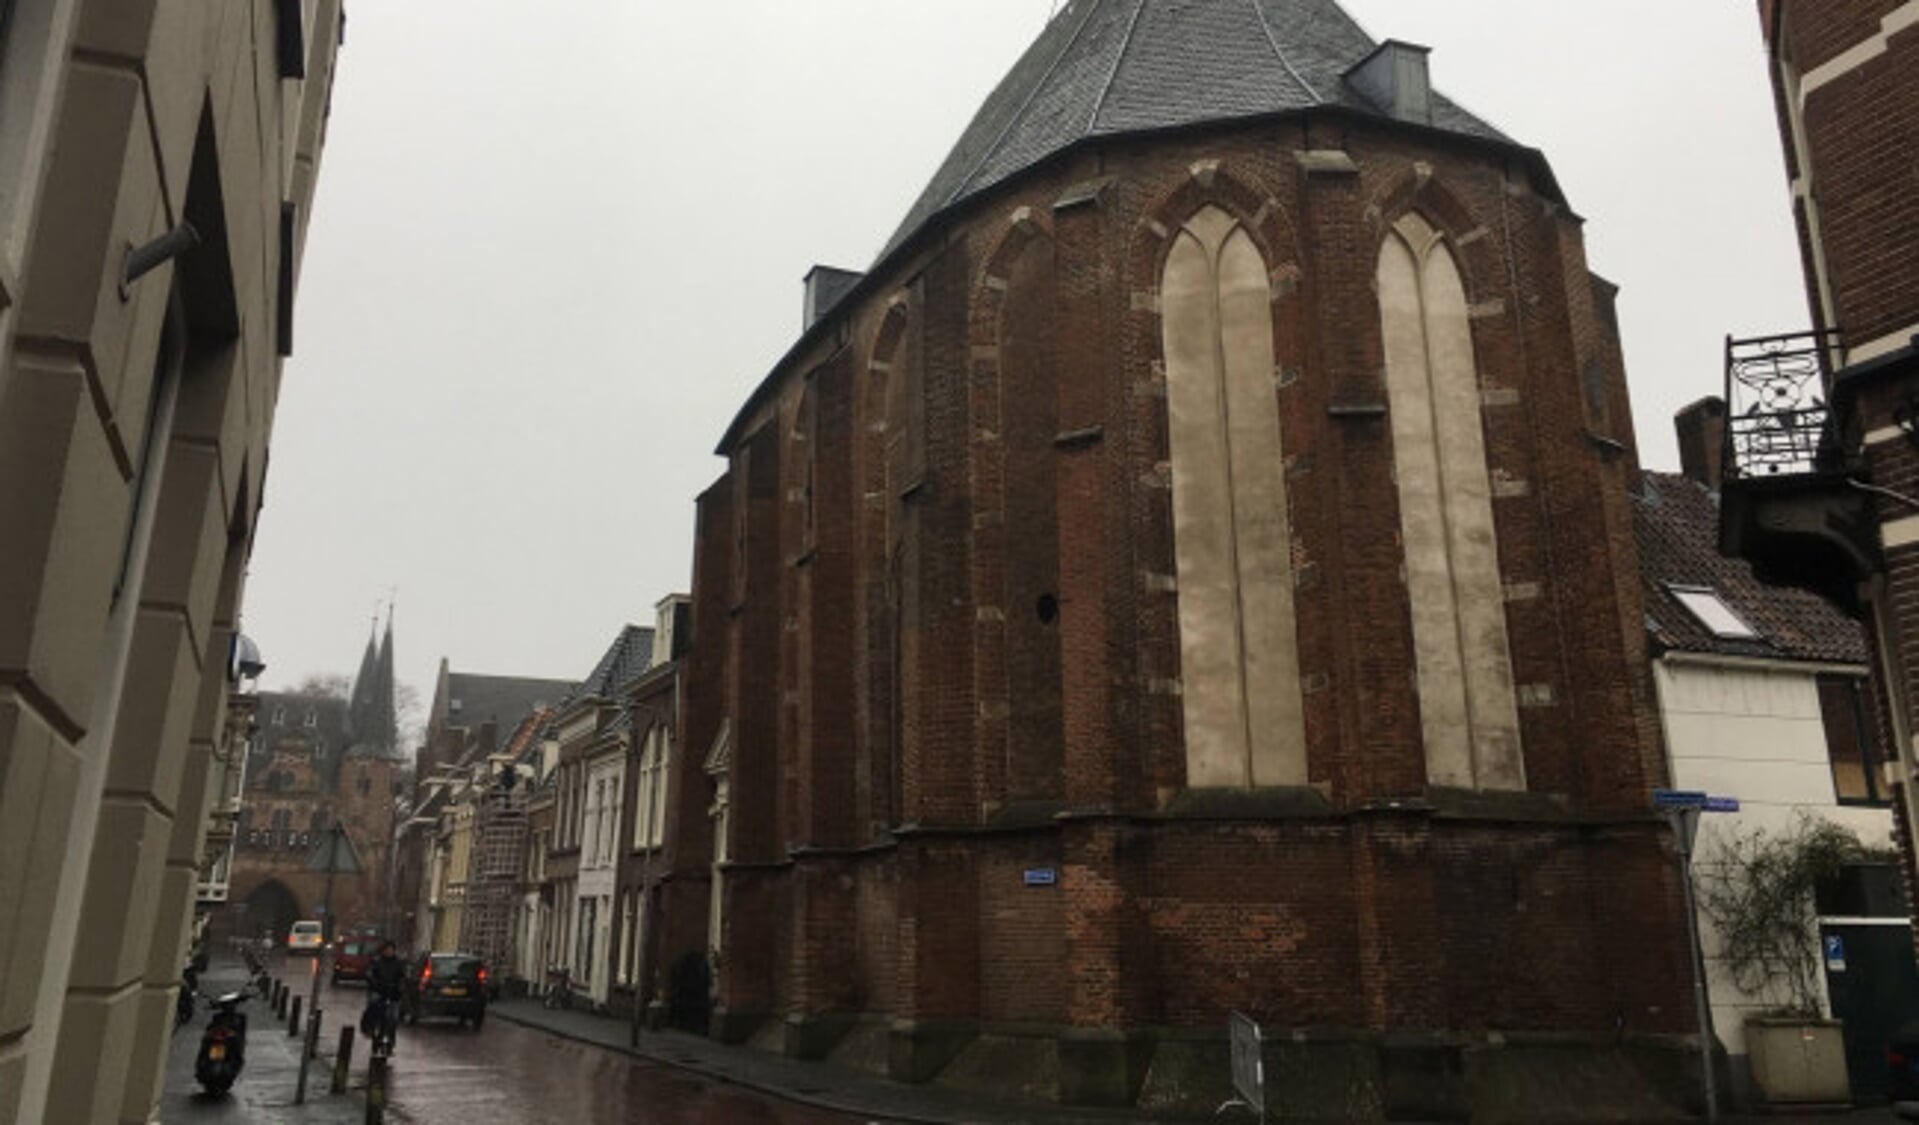  Fotobijschrift: De St. Annakapel op de hoek van de Broederweg en de Groenestraat was ooit de kapel van de Cellezusters.